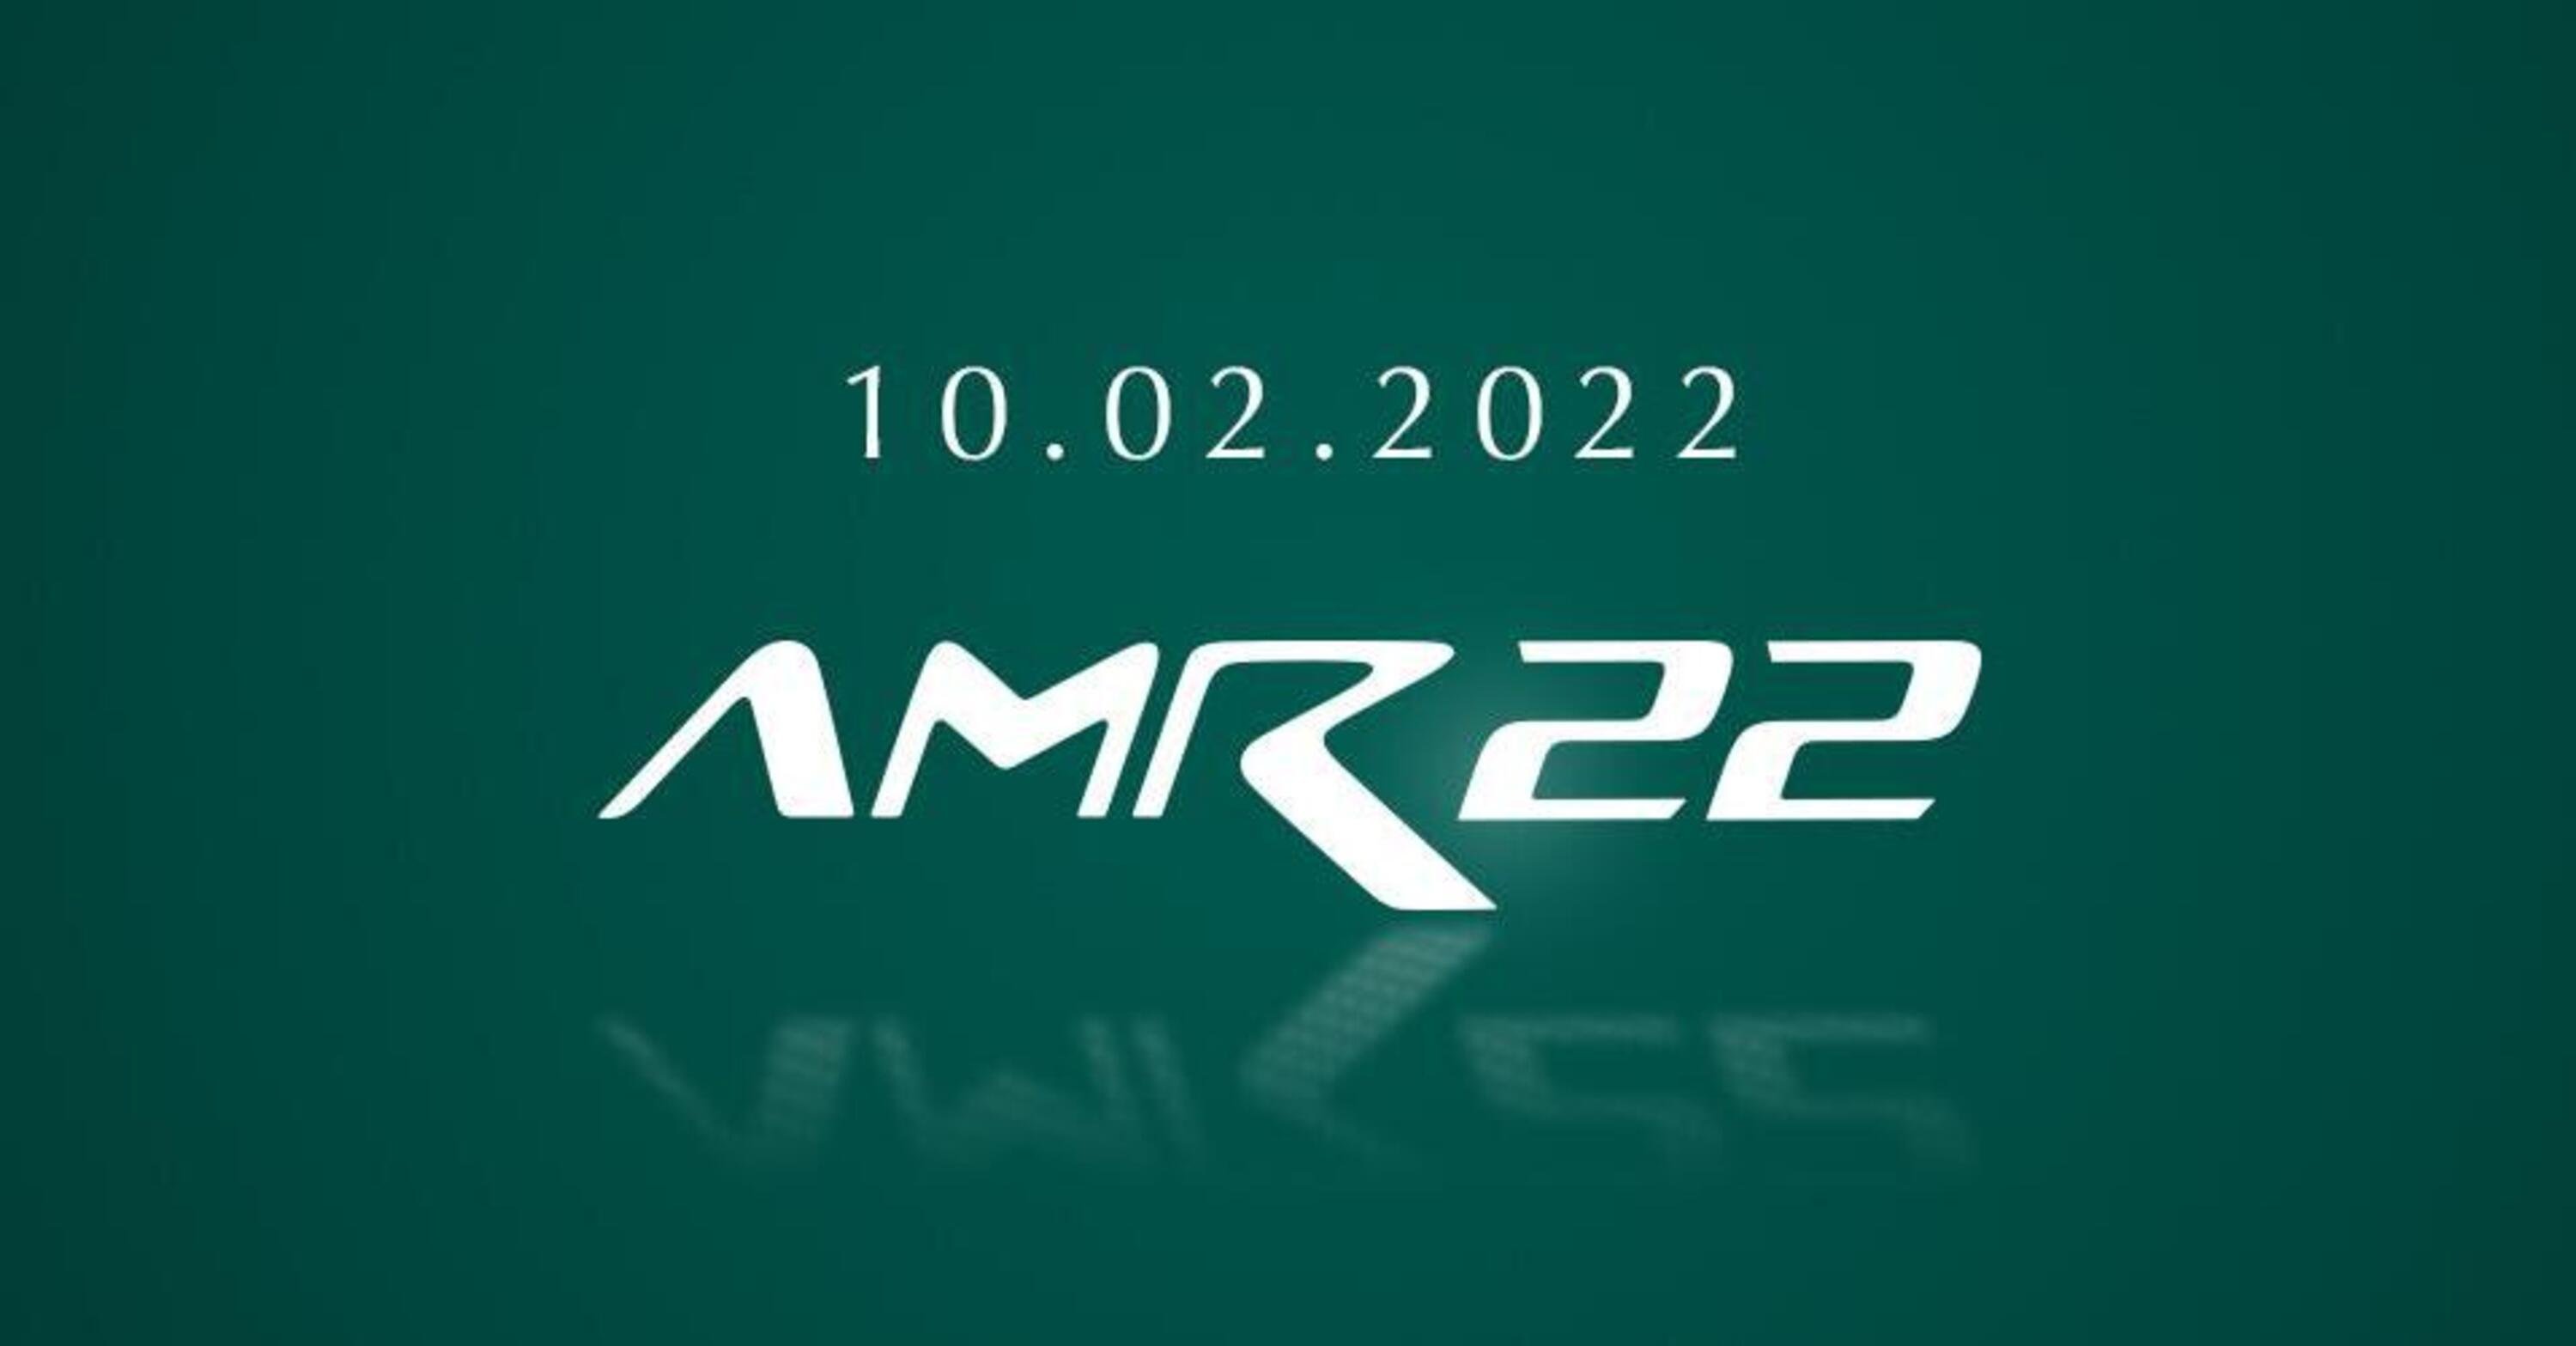 Formula 1: Aston Martin, la AMR22 sar&agrave; presentata il 10 febbraio